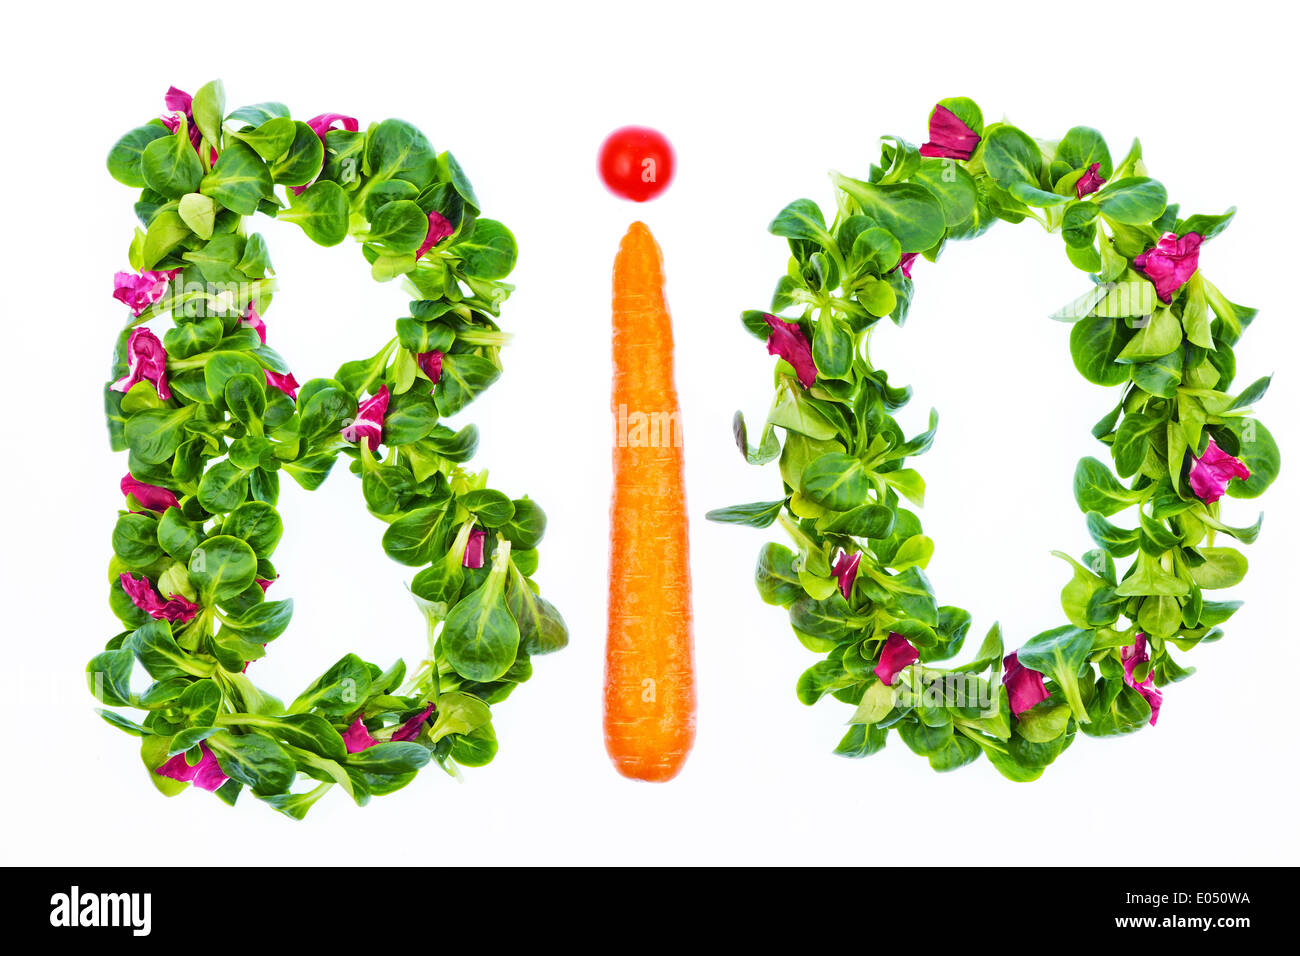 Das Wort Biologie aus Salat und Gemüse geschrieben. Gesunde Ernährung mit biologischen Lebensmitteln, Das Johanniskraut Bio aus Salat Und Gemuese geschr Stockfoto